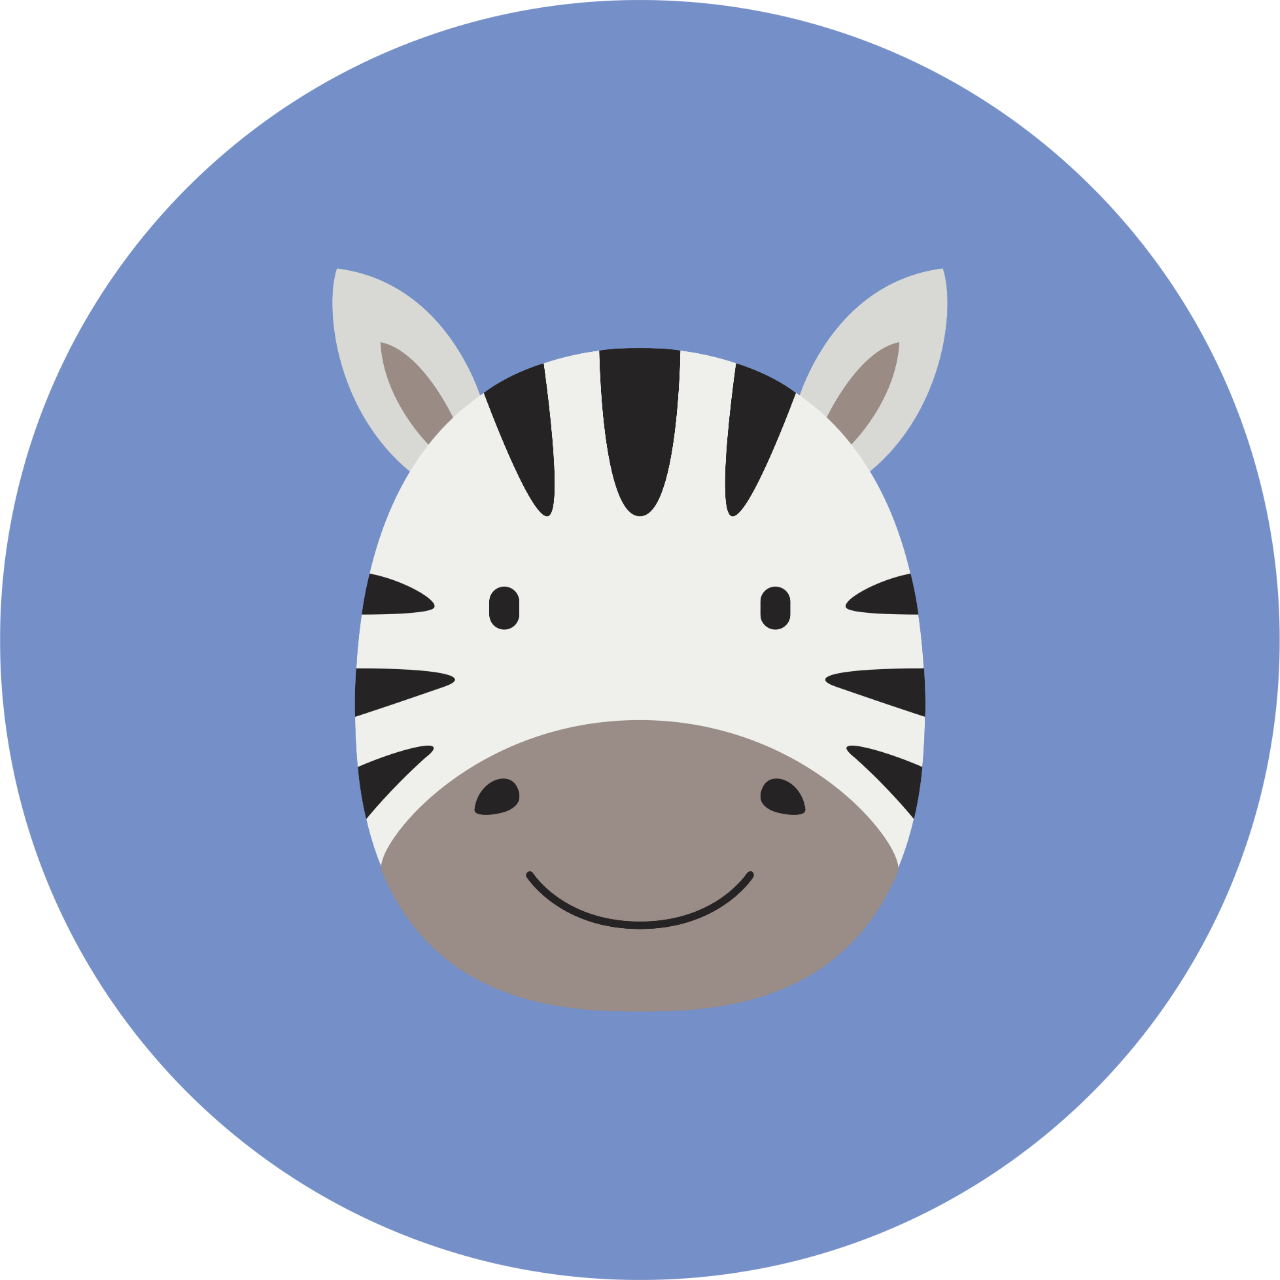 Mavi bir daire içinde başının üstünde ve yanlarında siyah renk üç çizginin bulunduğu beyaz renkli bir zebra başı